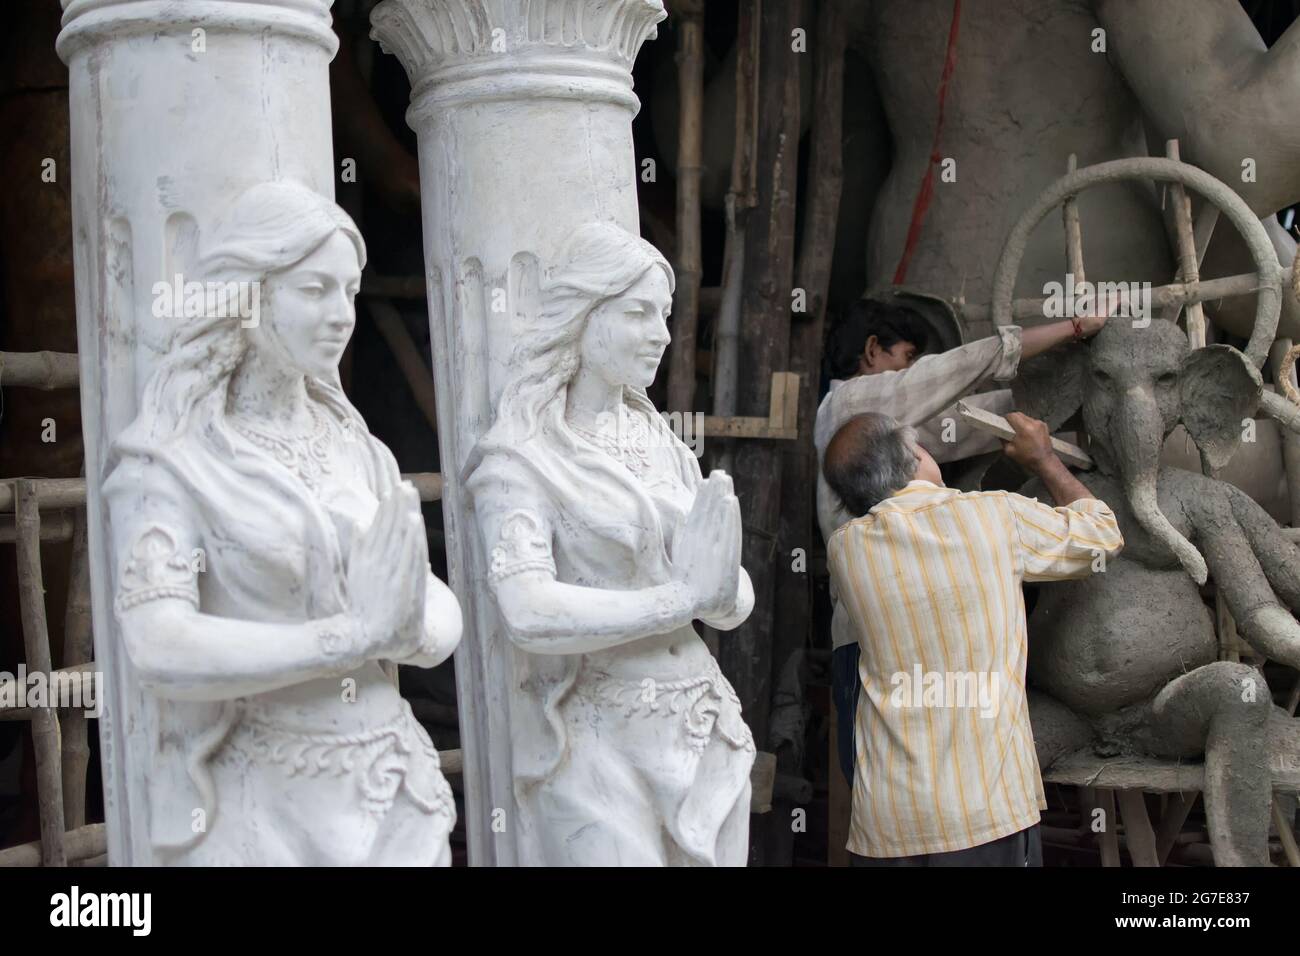 KOLKATA, BENGALE-OCCIDENTAL, INDE - 13 SEPTEMBRE 2015: Artistes non identifiés préparant l'idole d'argile de Lord Ganesha , deux Apsaras (beautés divines) debout près Banque D'Images